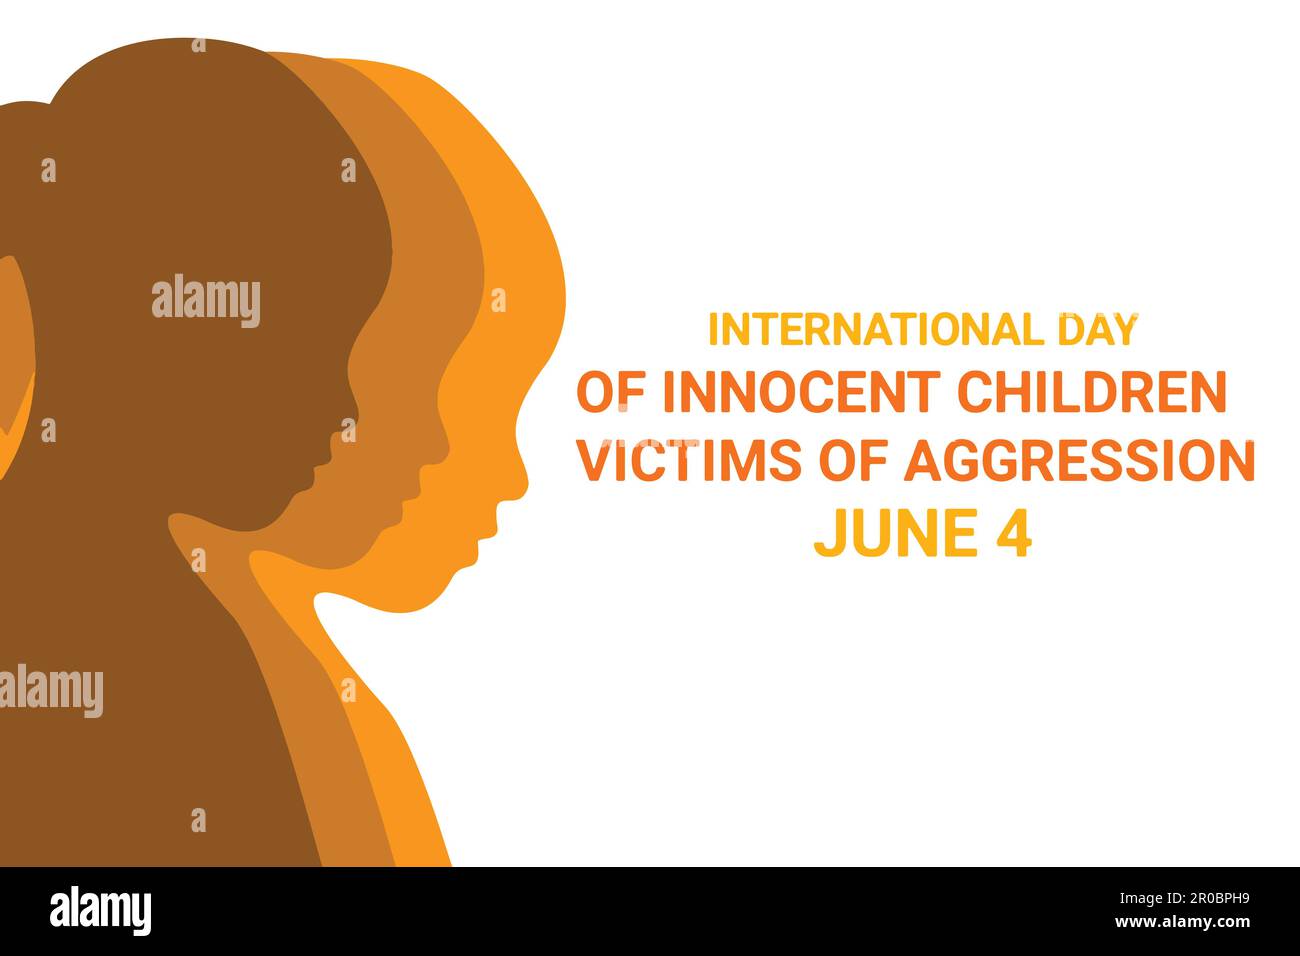 Journée internationale des enfants innocents victimes d'agression. 4 juin. Illustration vectorielle. Convient aux cartes de vœux, affiches et bannières. Illustration de Vecteur